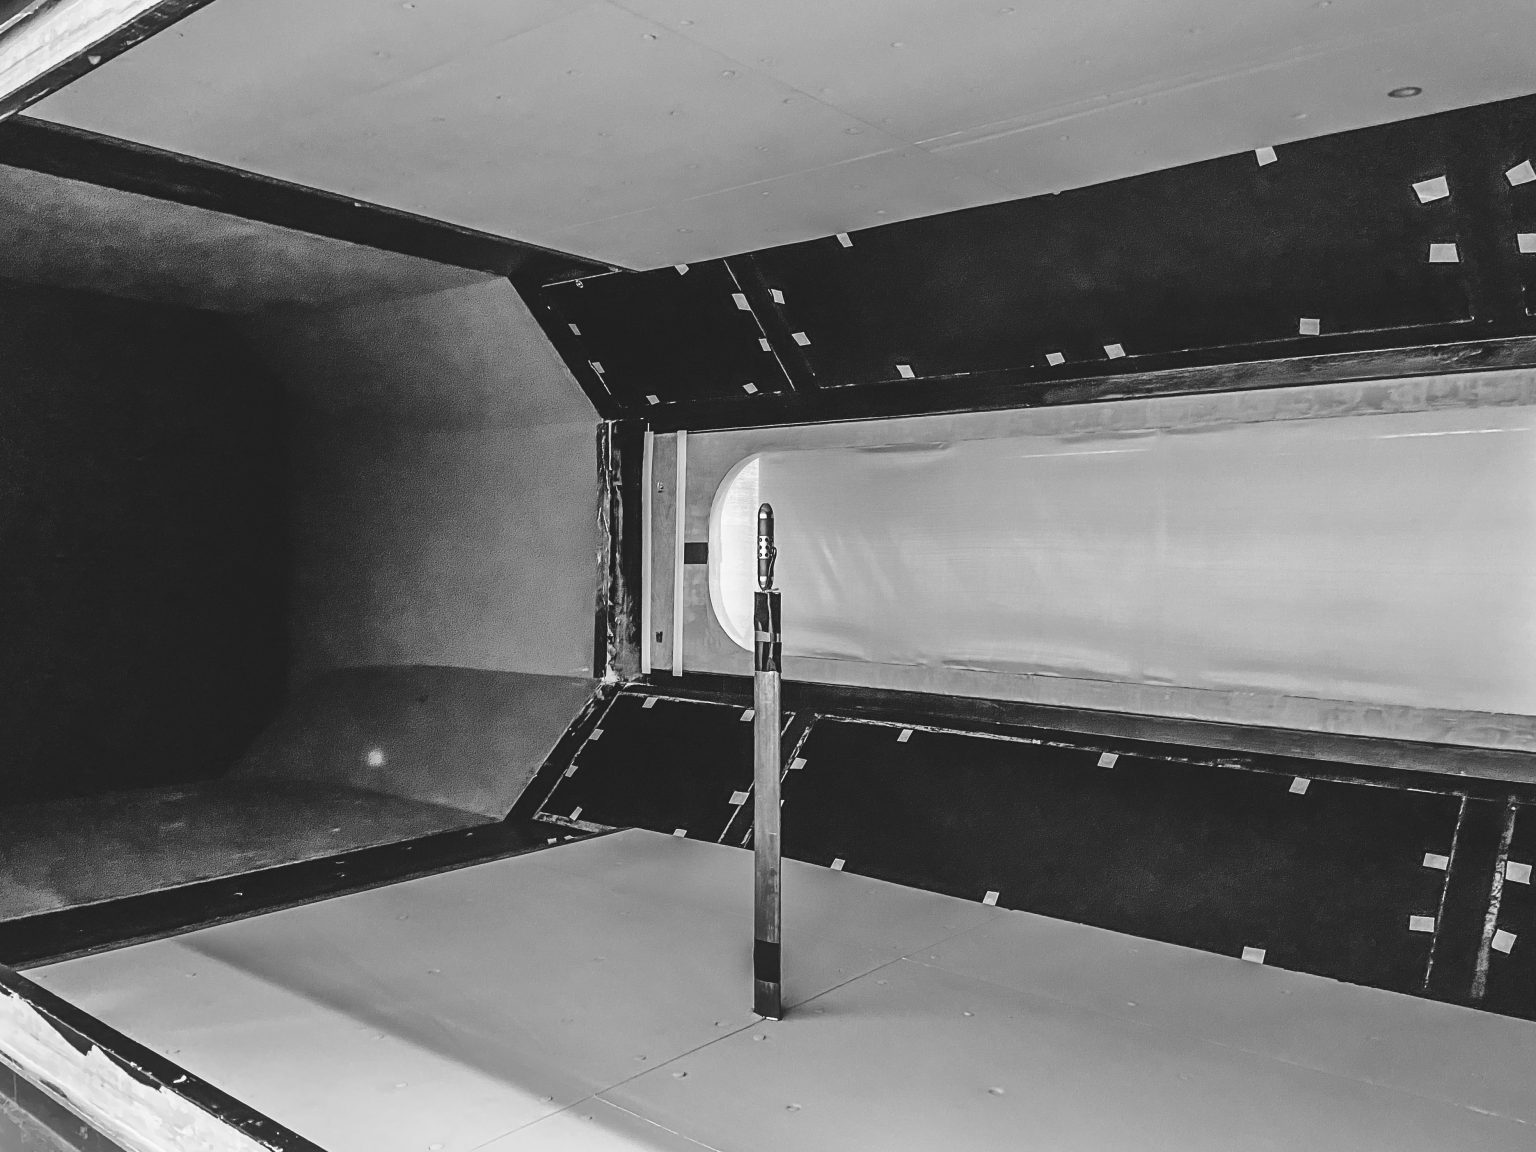 QindW TUDelft 2 1 1536x1152 - Nowe, referencyjne źródło dźwięku do pomiarów w tunelu aerodynamicznym Qsources QindW